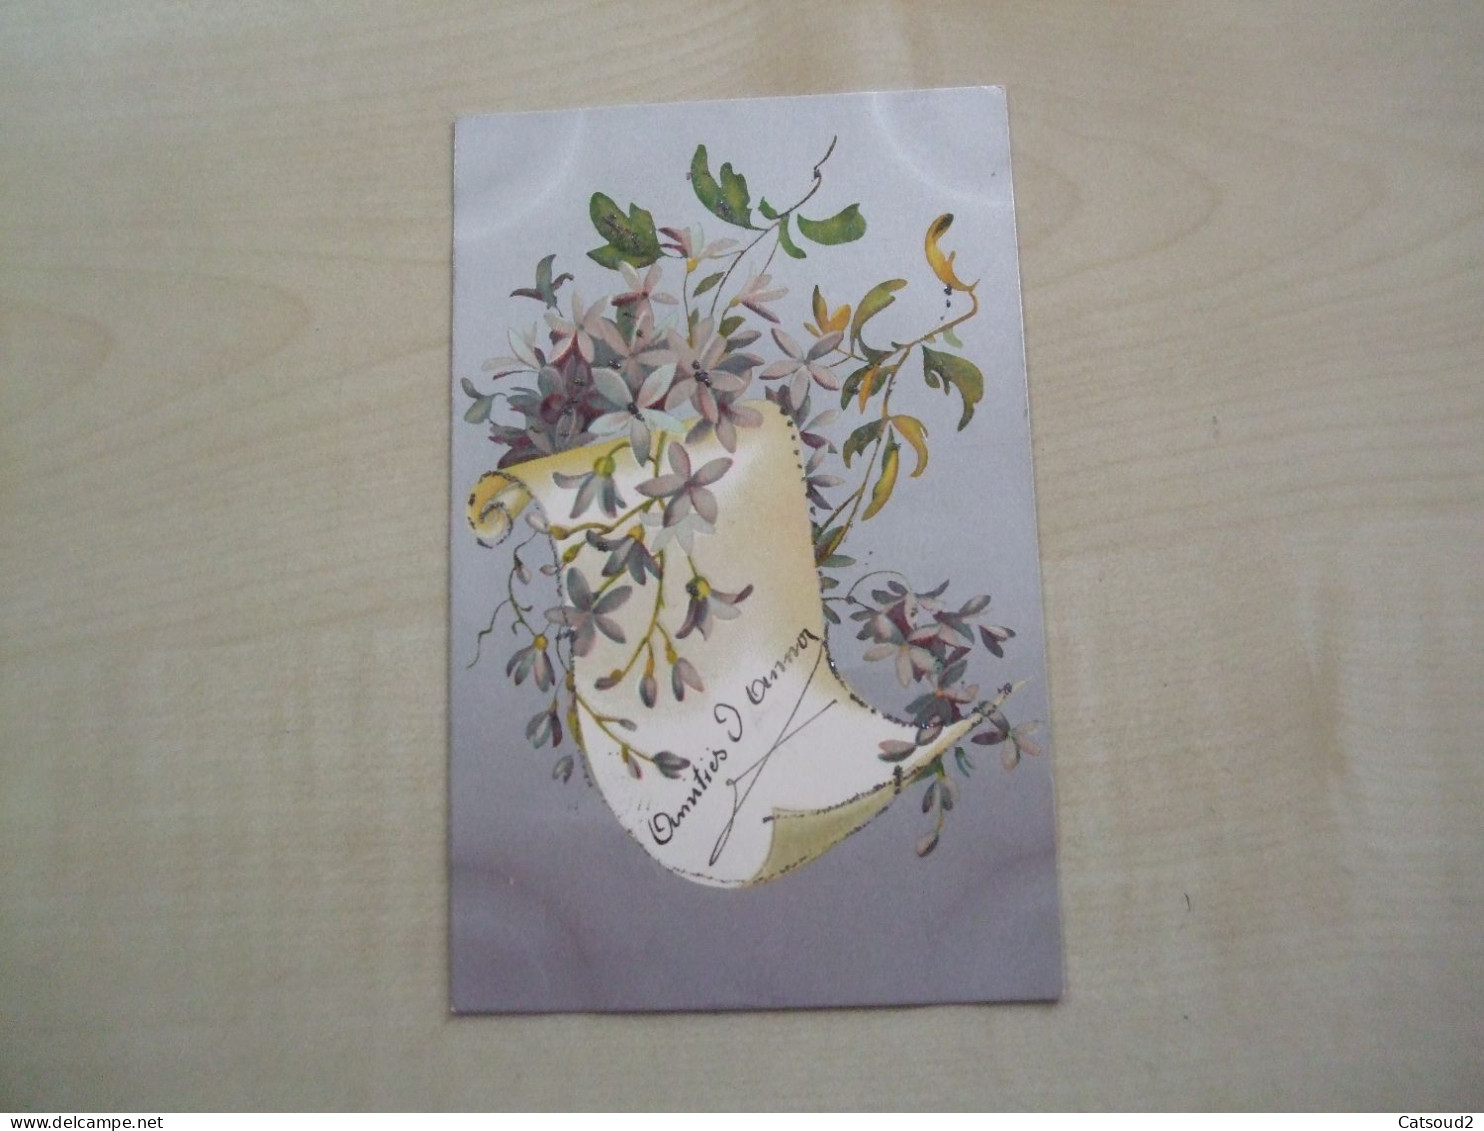 Carte Postale Ancienne Pailletée FLEURS - Fleurs